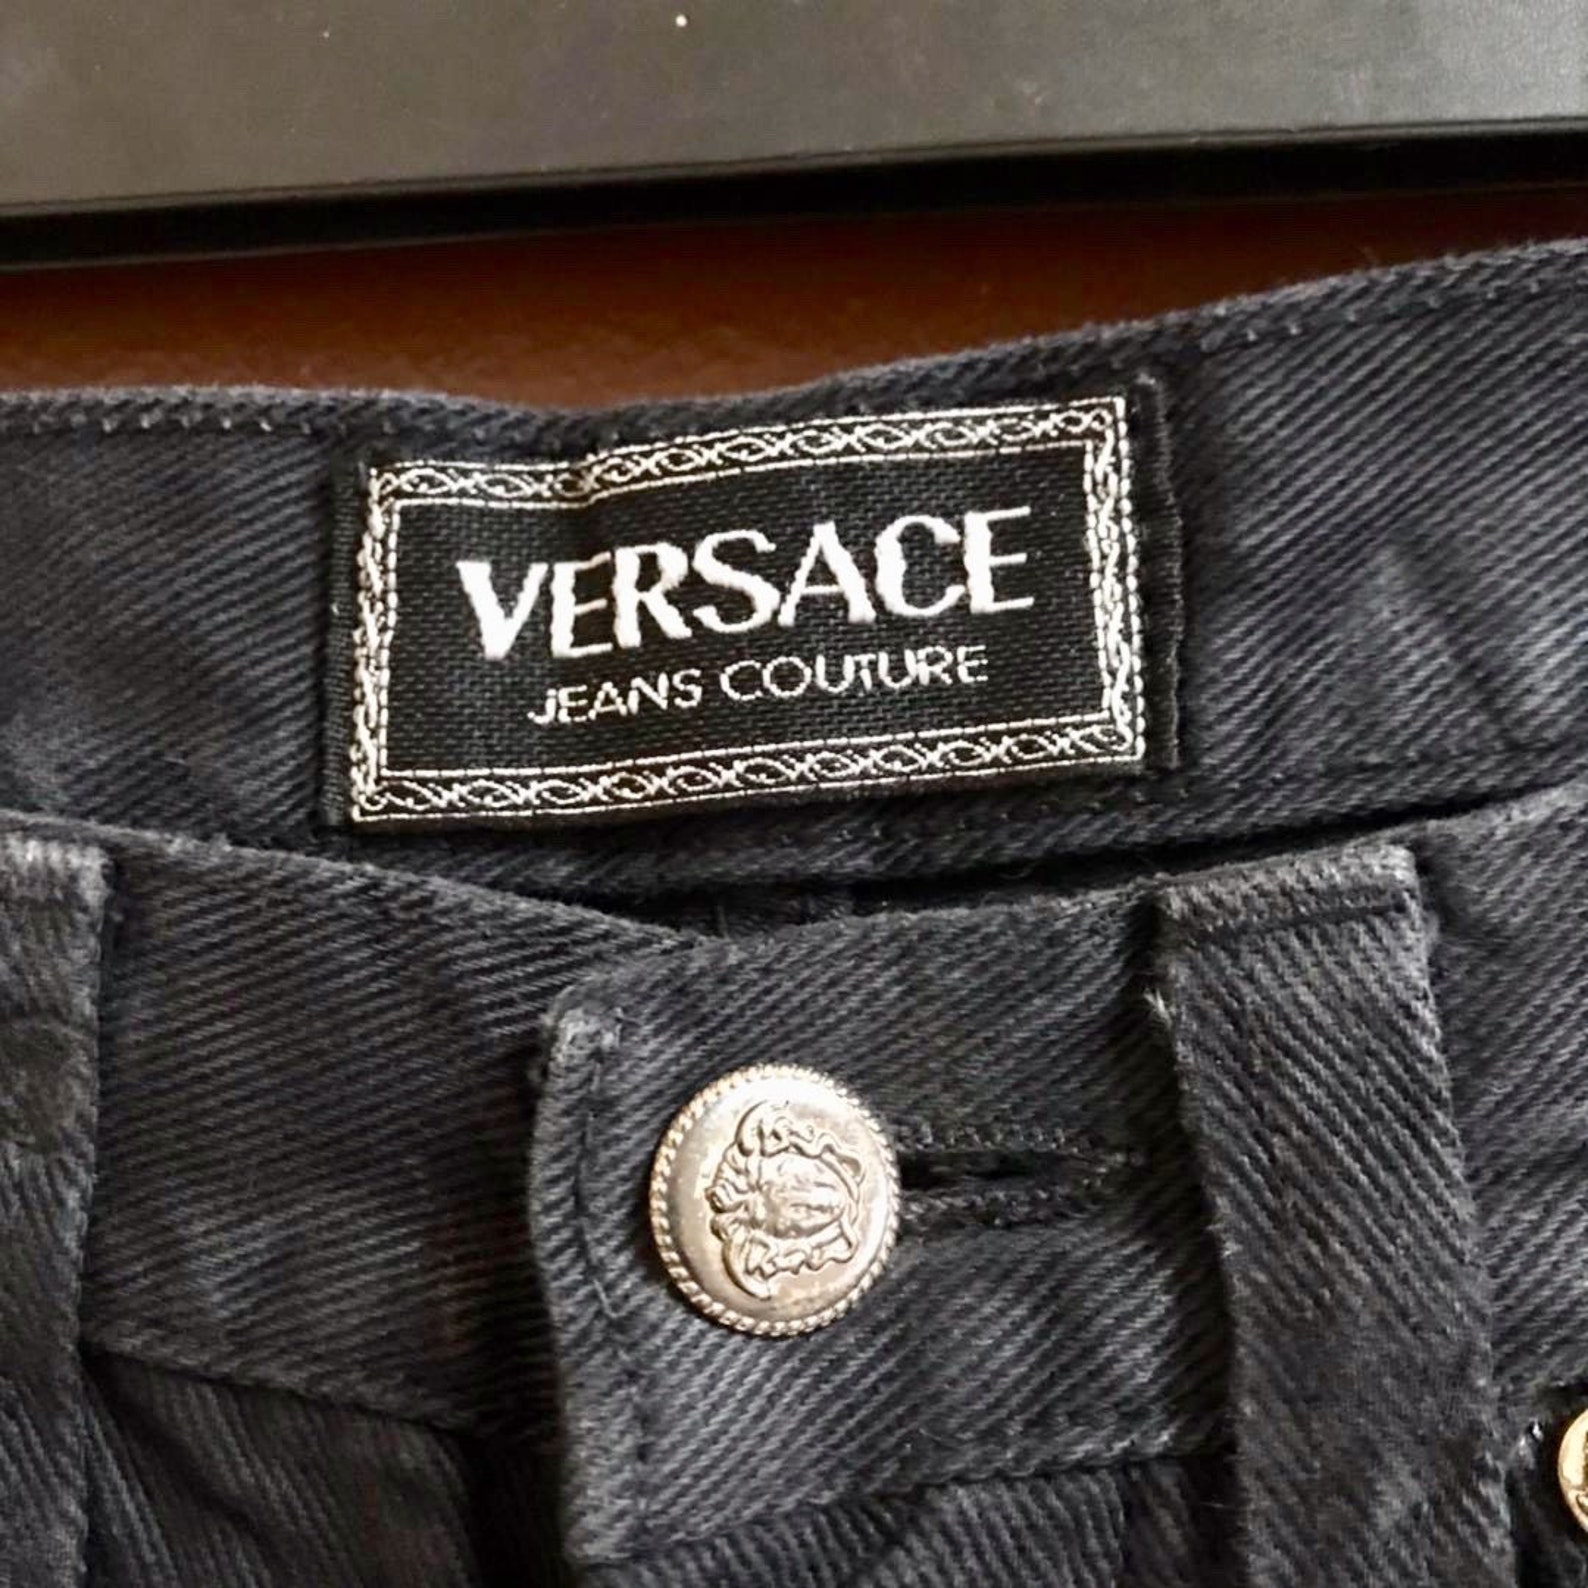 Vintage Versace Jeans Couture Brand Super Black Plaid Design | Etsy